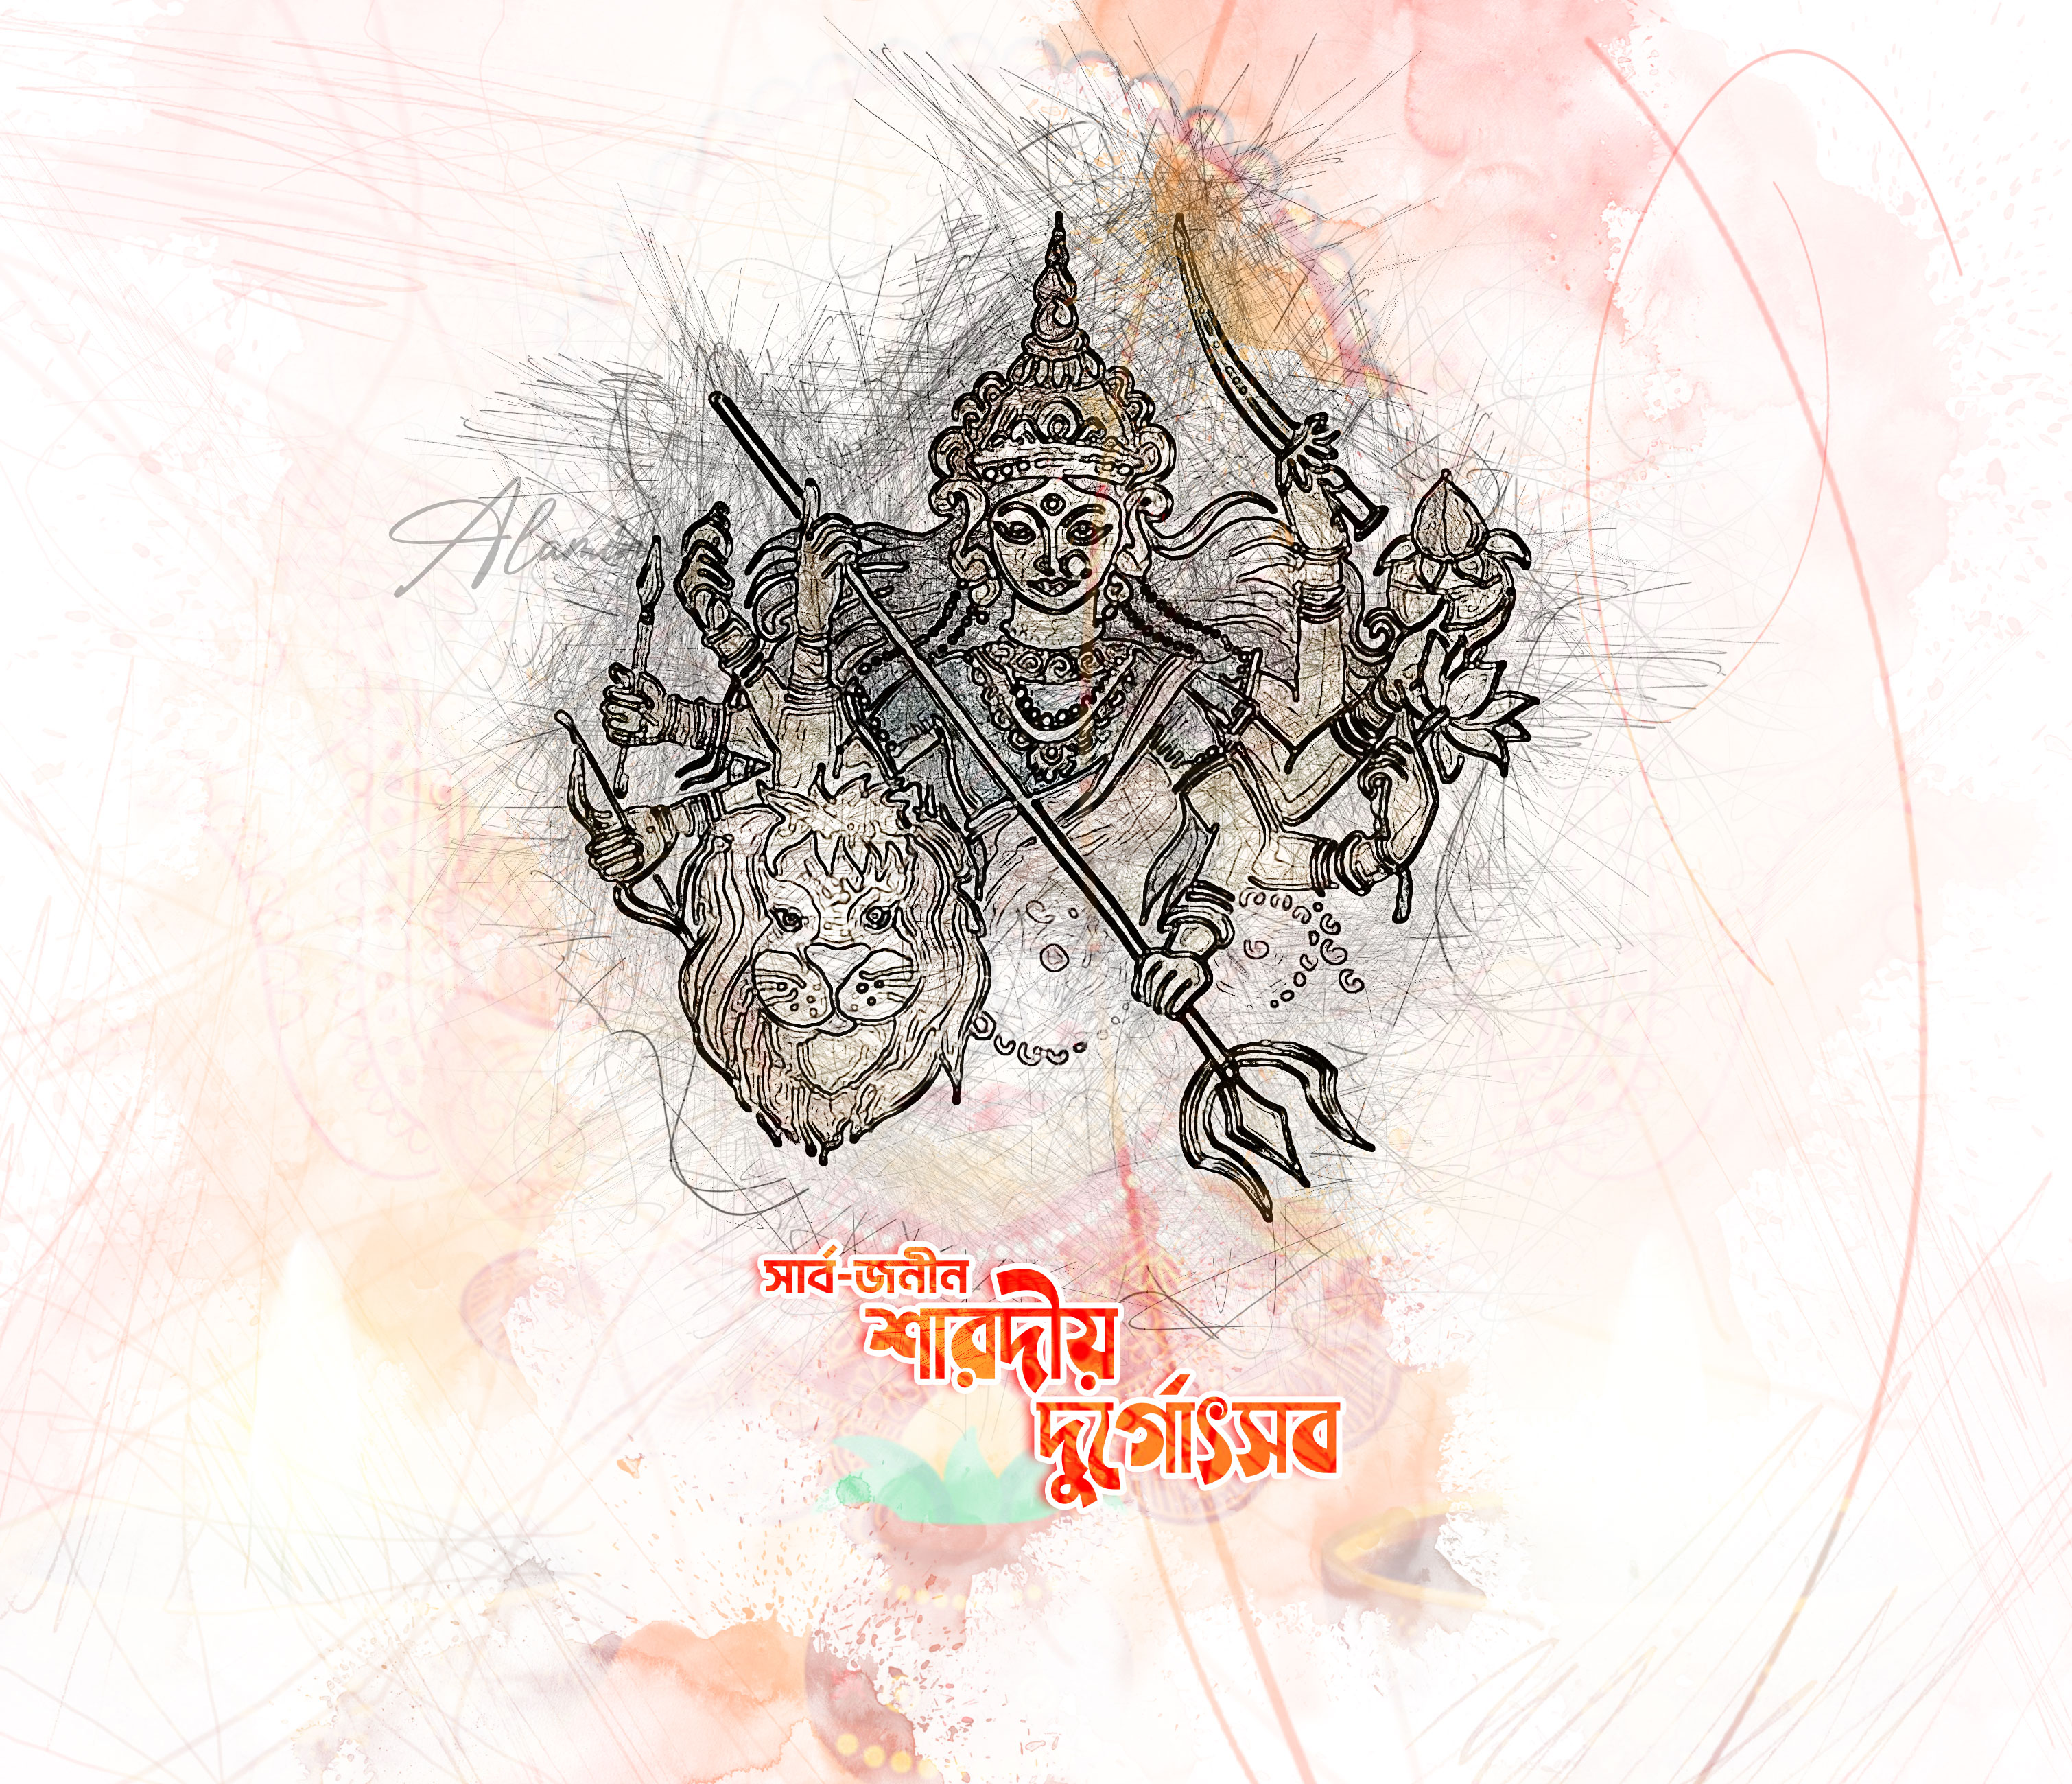 Durga Maa Face Drawing - Mahalaya Special Drawing 2020 | Maa Durga Puja  Drawing easy step by step - YouTube | Face drawing, Drawings, Step by step  drawing